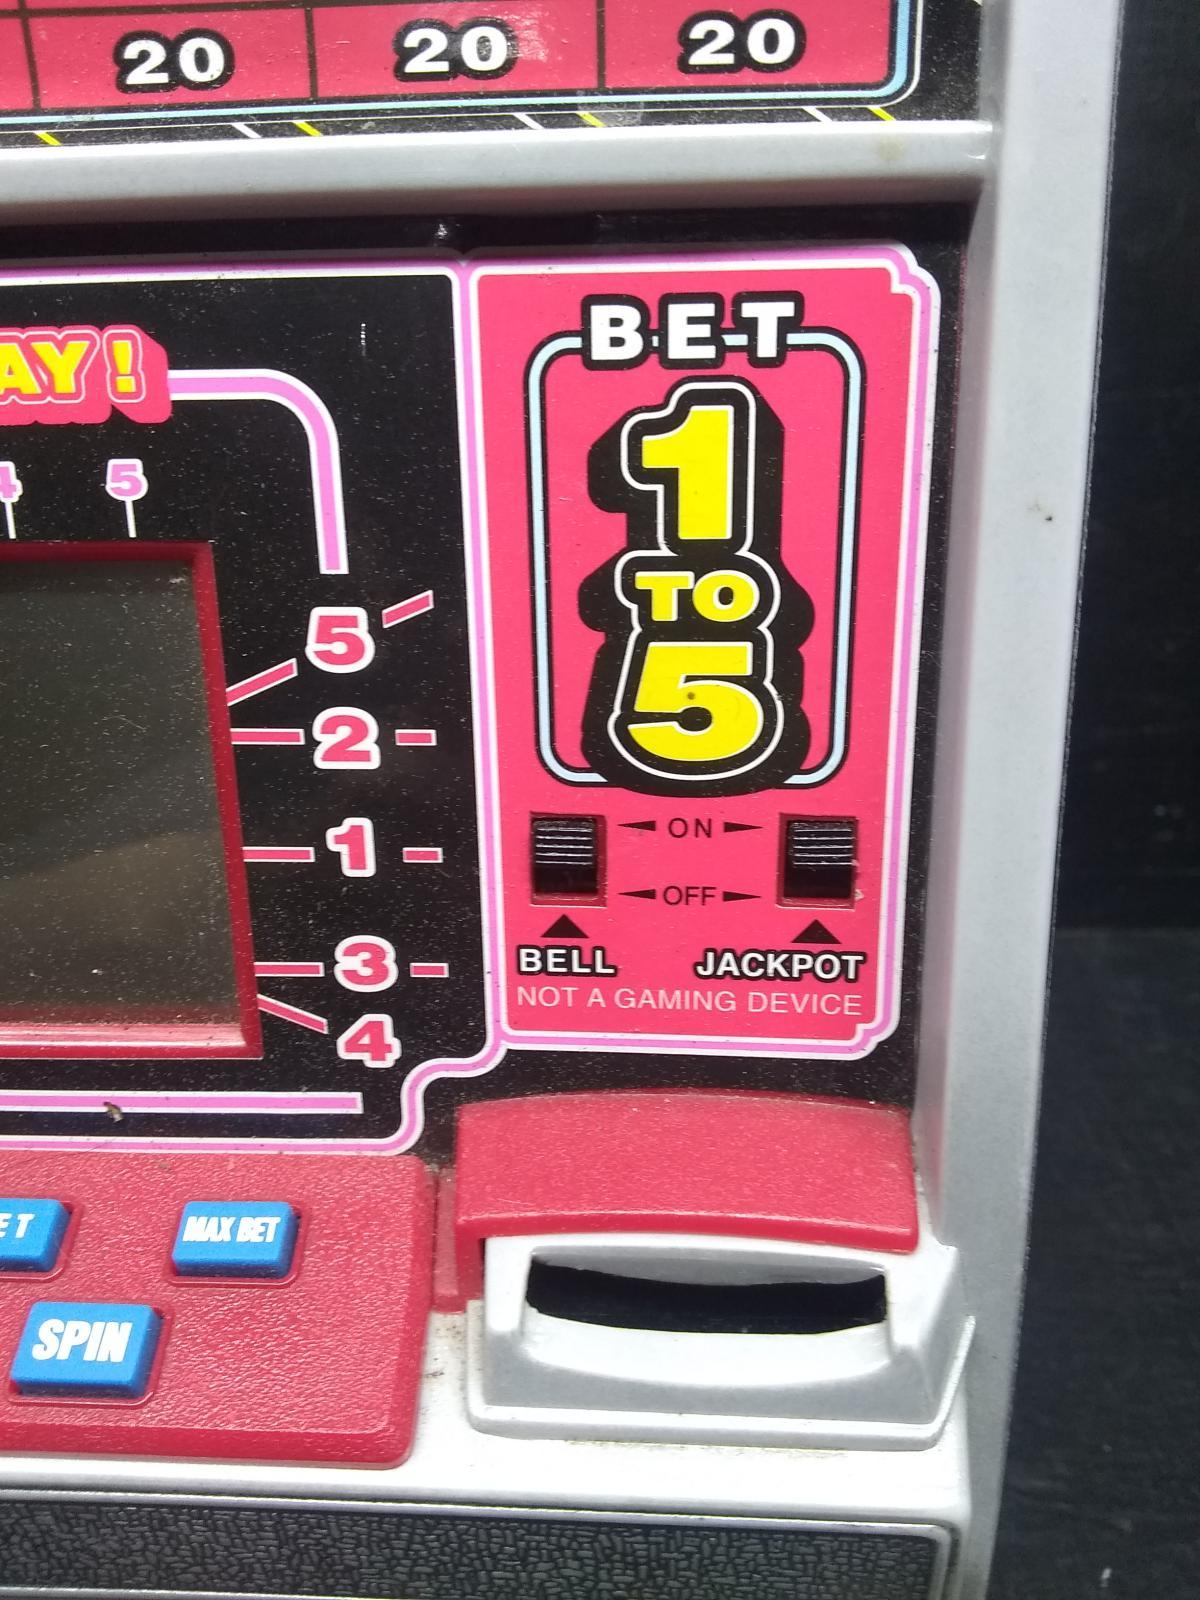 Novelty Electronic Casino Slot Machine